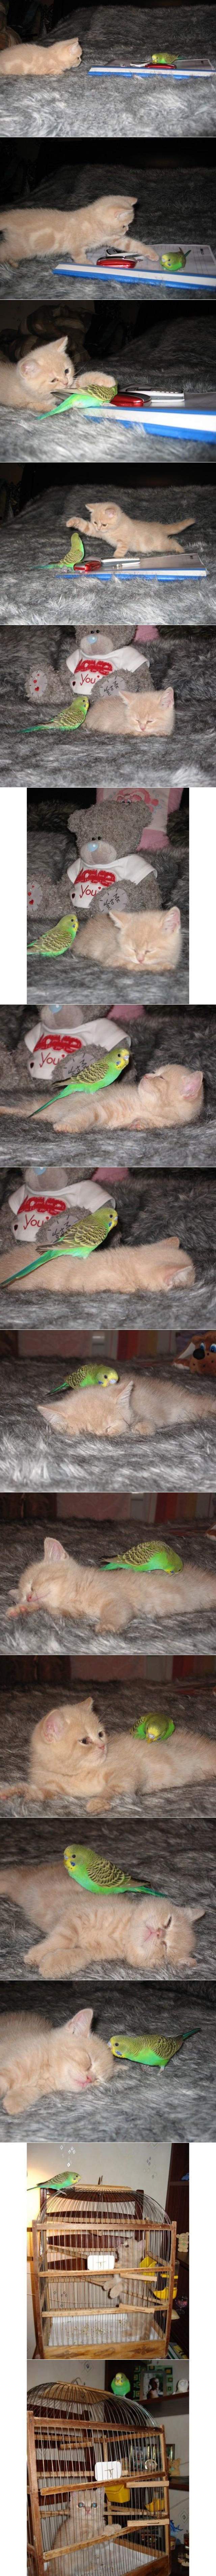 Hilarious Parakeet and Kitten Friends